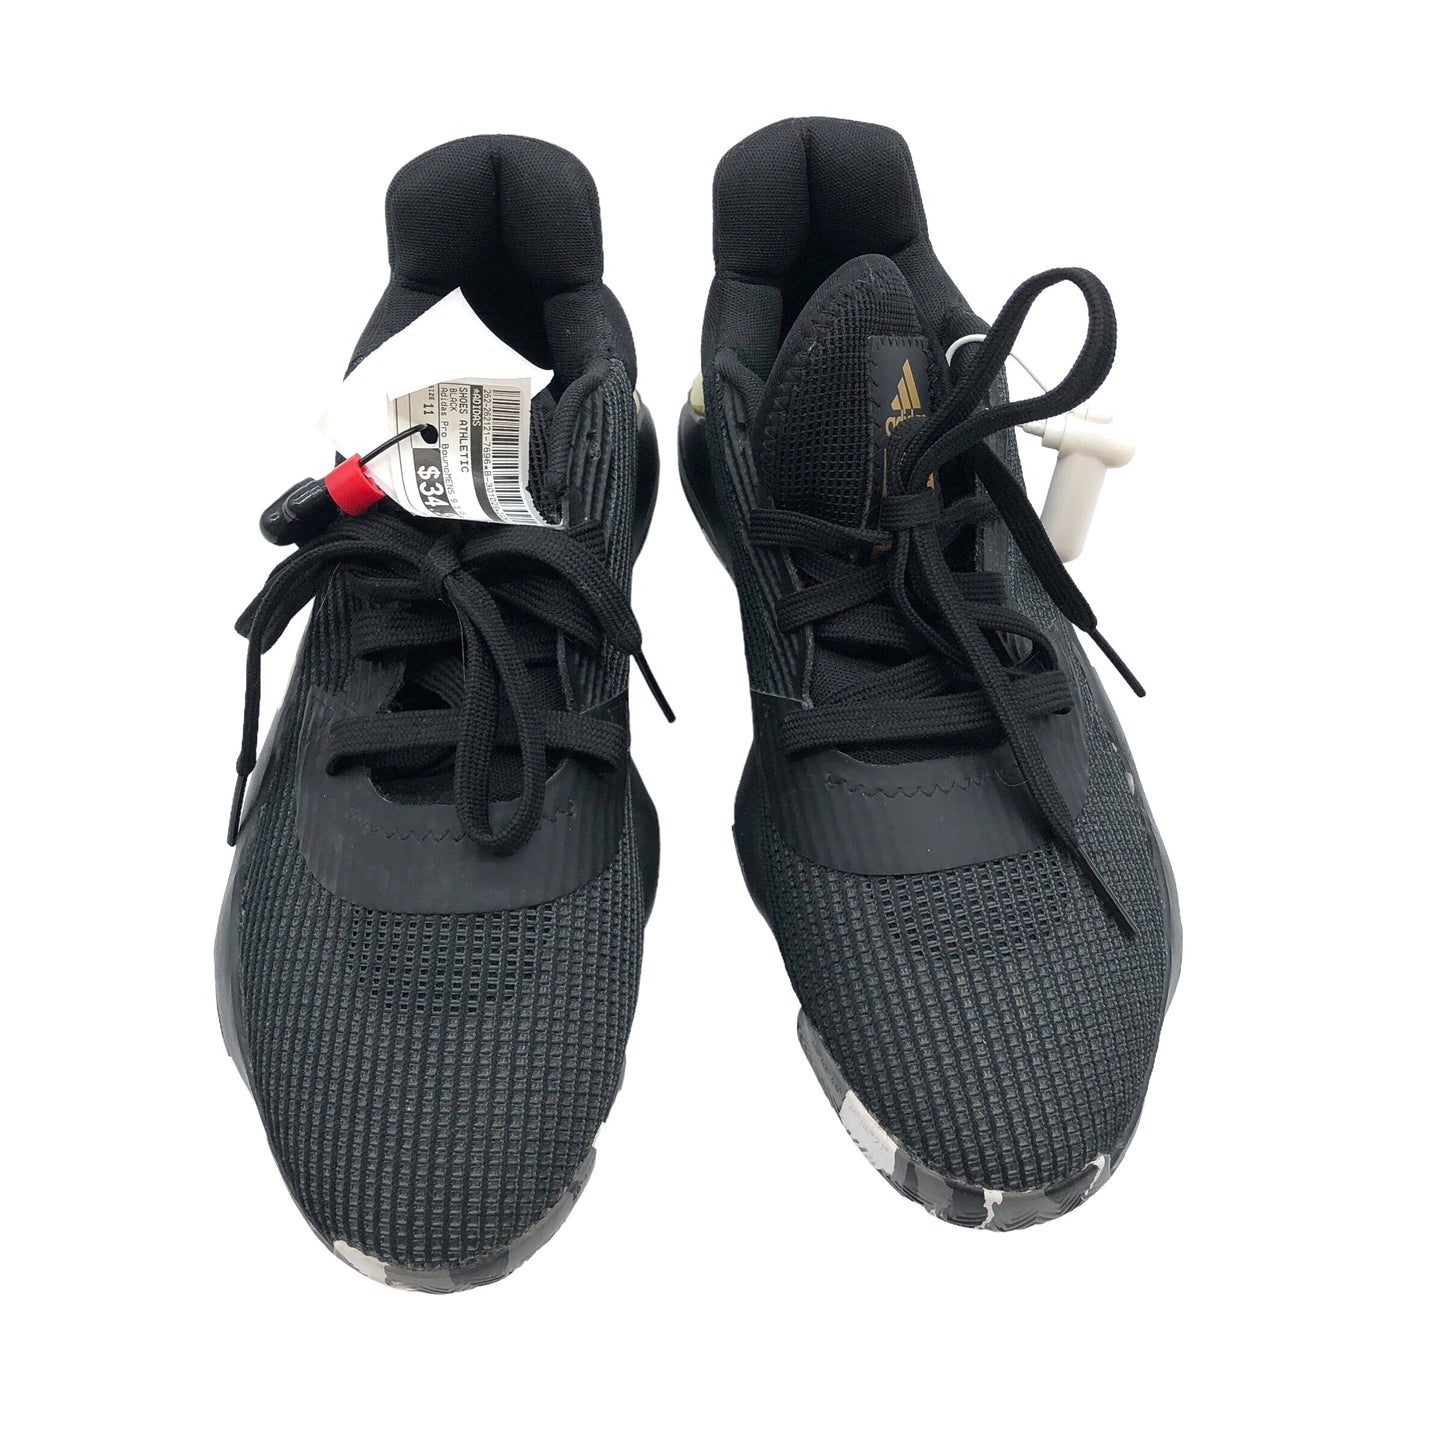 Black Shoes Athletic Adidas, Size 11